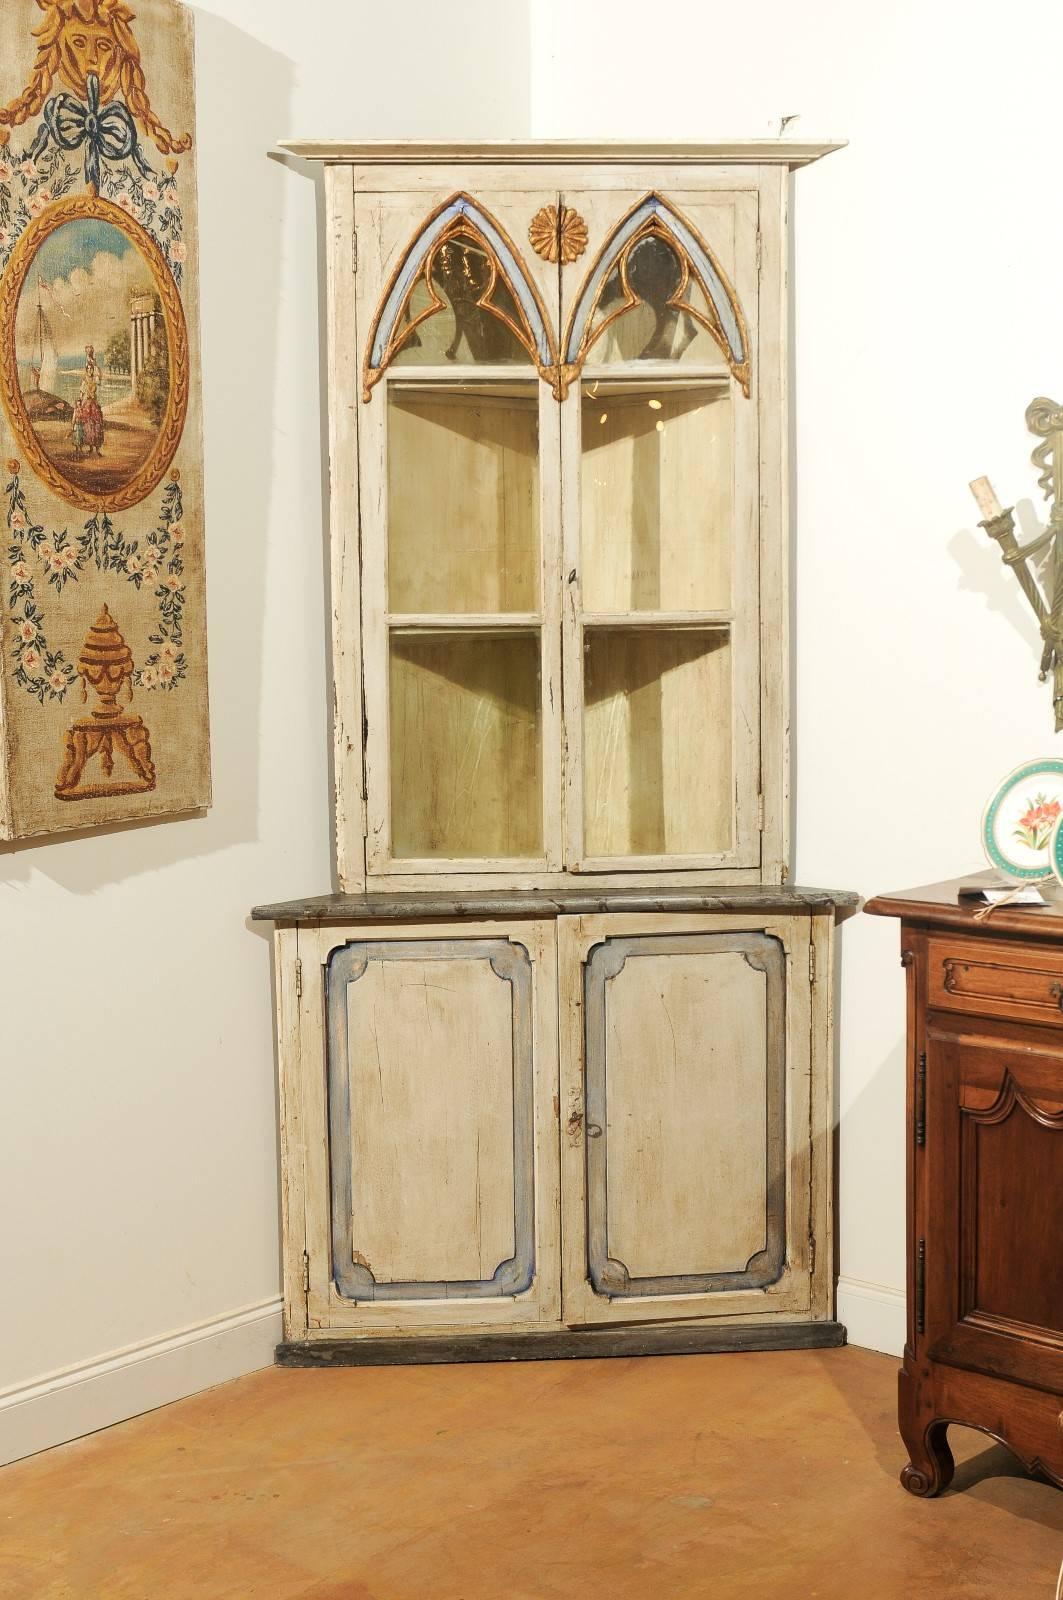 Schwedischer Eckschrank im Stil der schwedischen Gotik mit bemaltem Holz und Glastüren aus der Mitte des 19. Jahrhunderts. Dieser exquisite schwedische Eckschrank weist ein geformtes Gesims auf, das über zwei gotisch inspirierte Türen mit